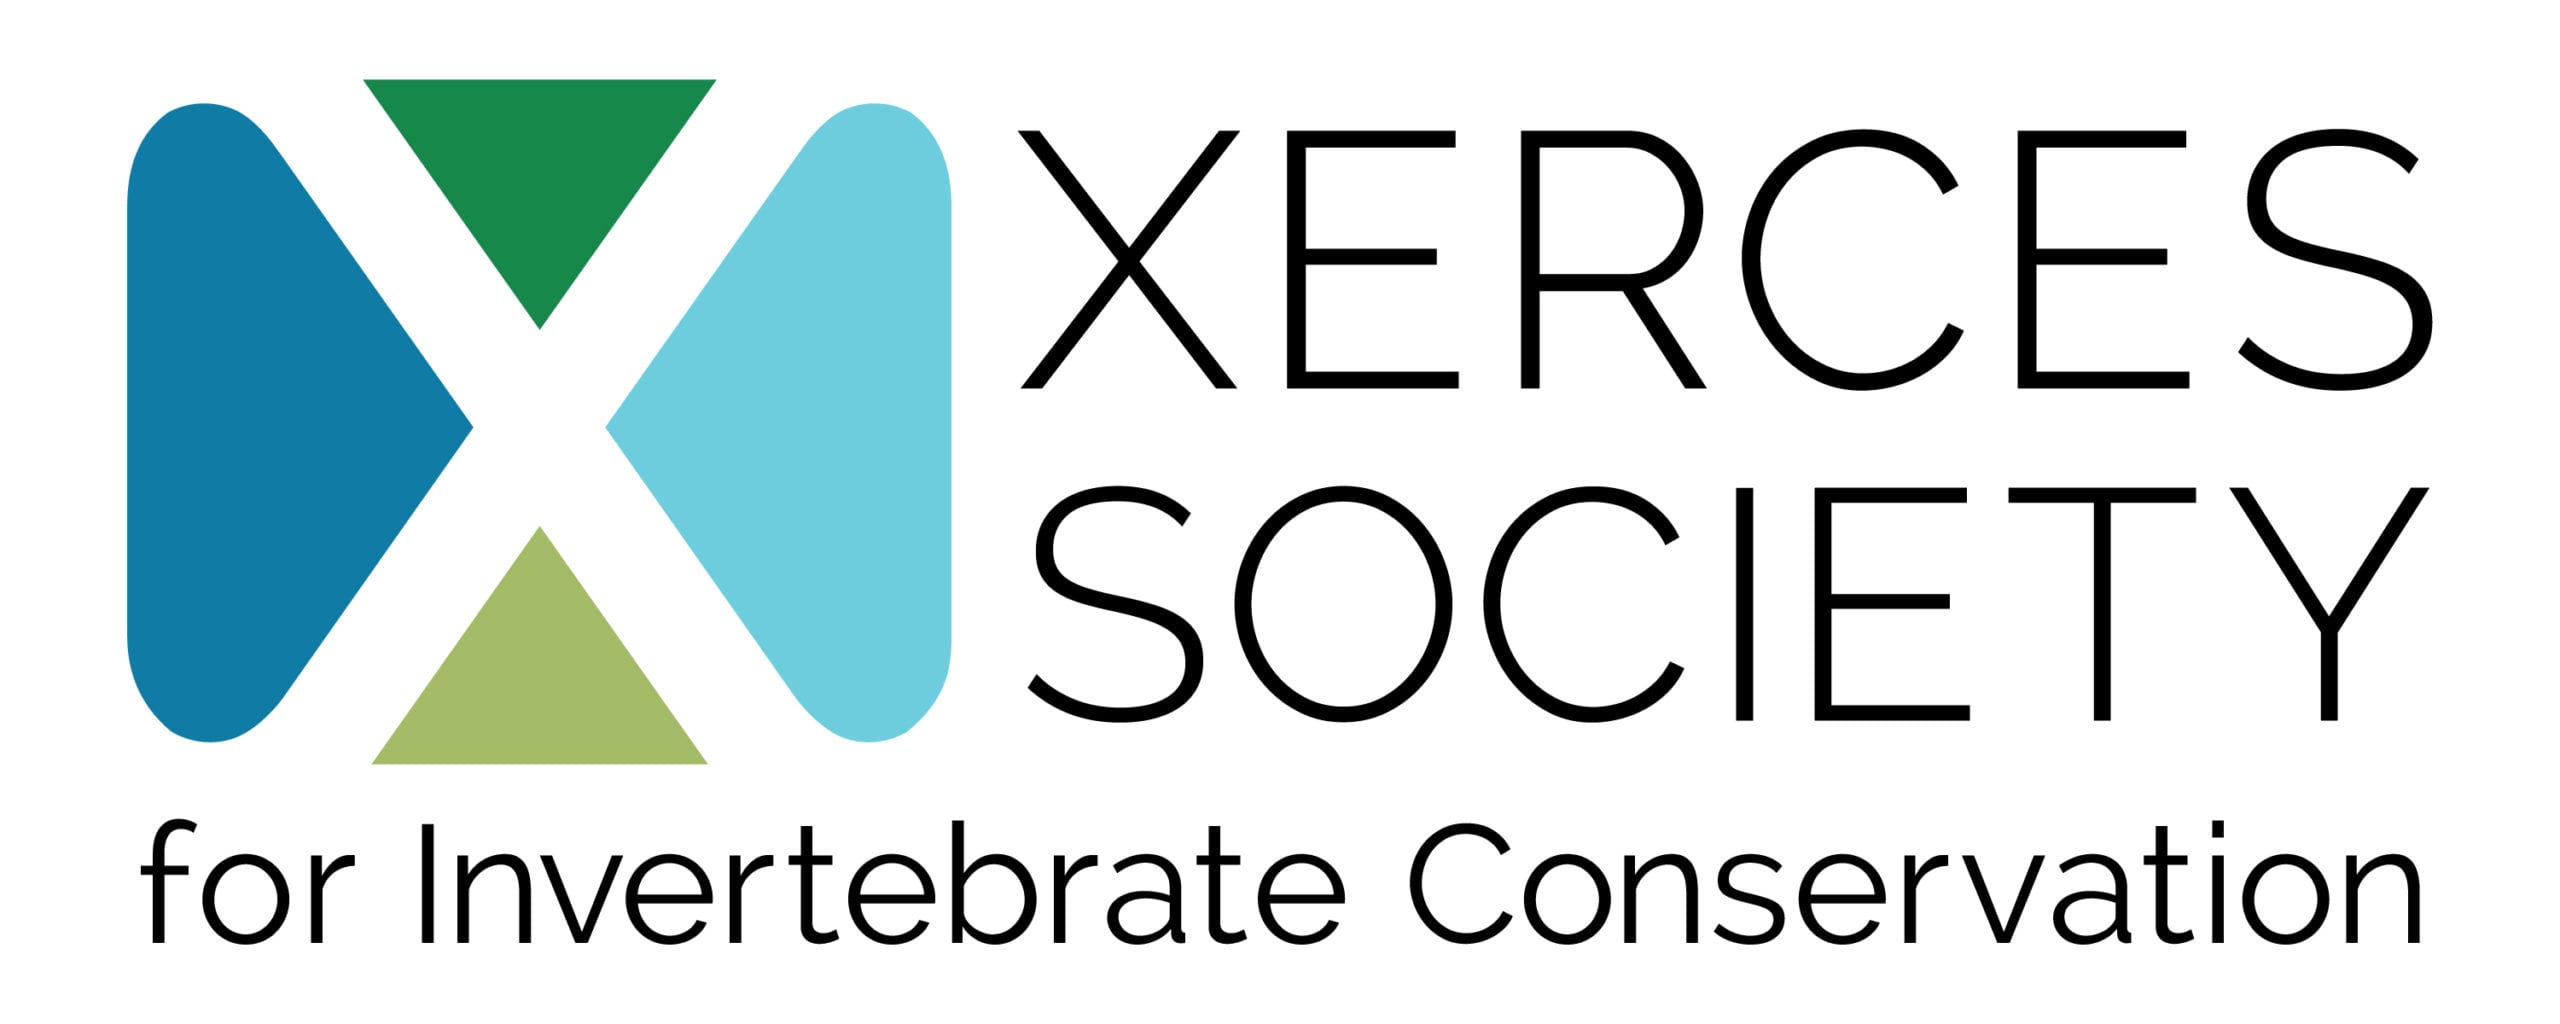 Xerces logo CMYK horizontal_Feb2017